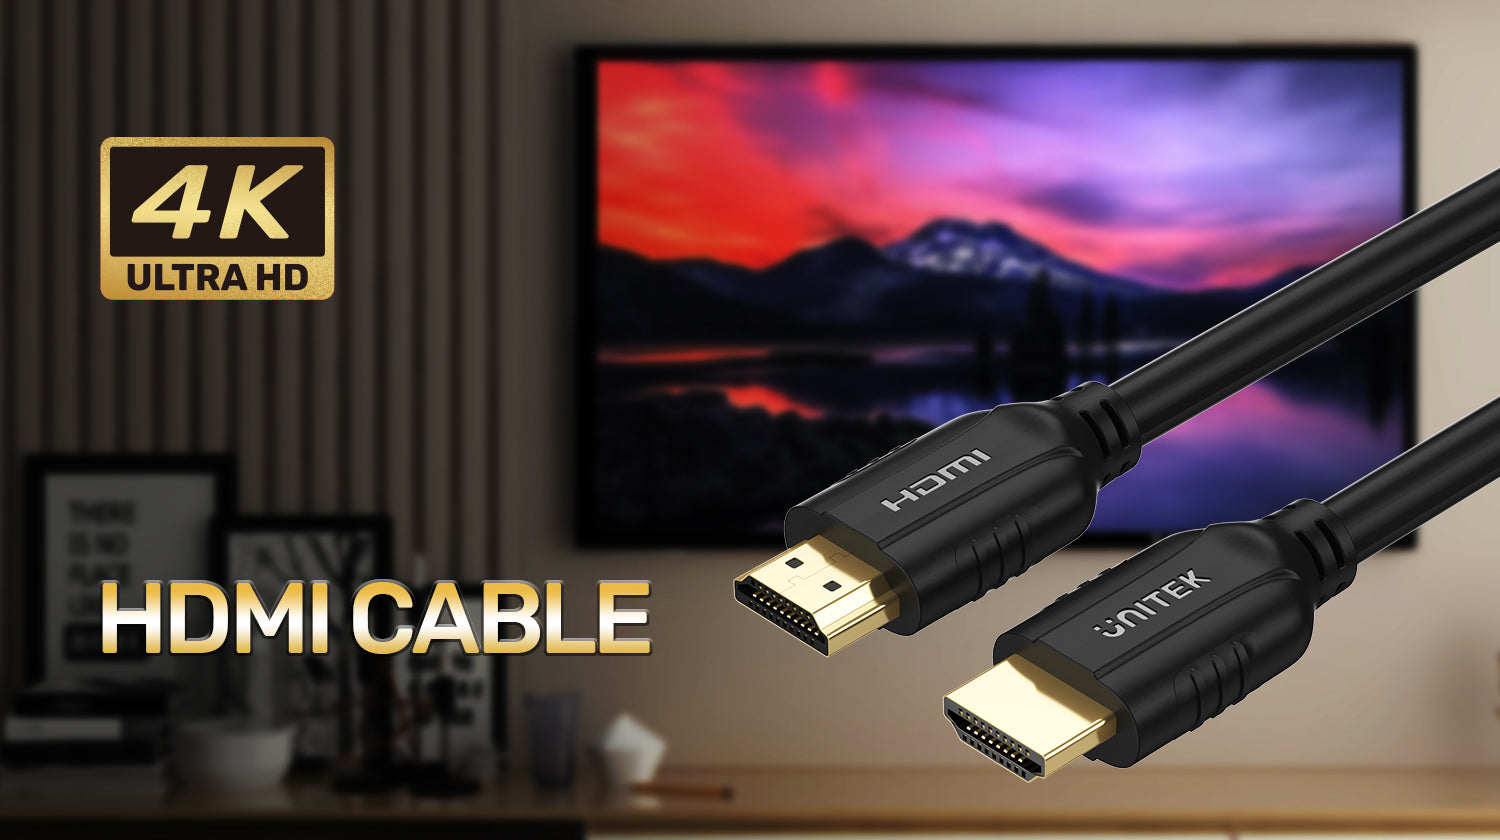 Kabel HDMI - HDMI 2.0 4K 5m